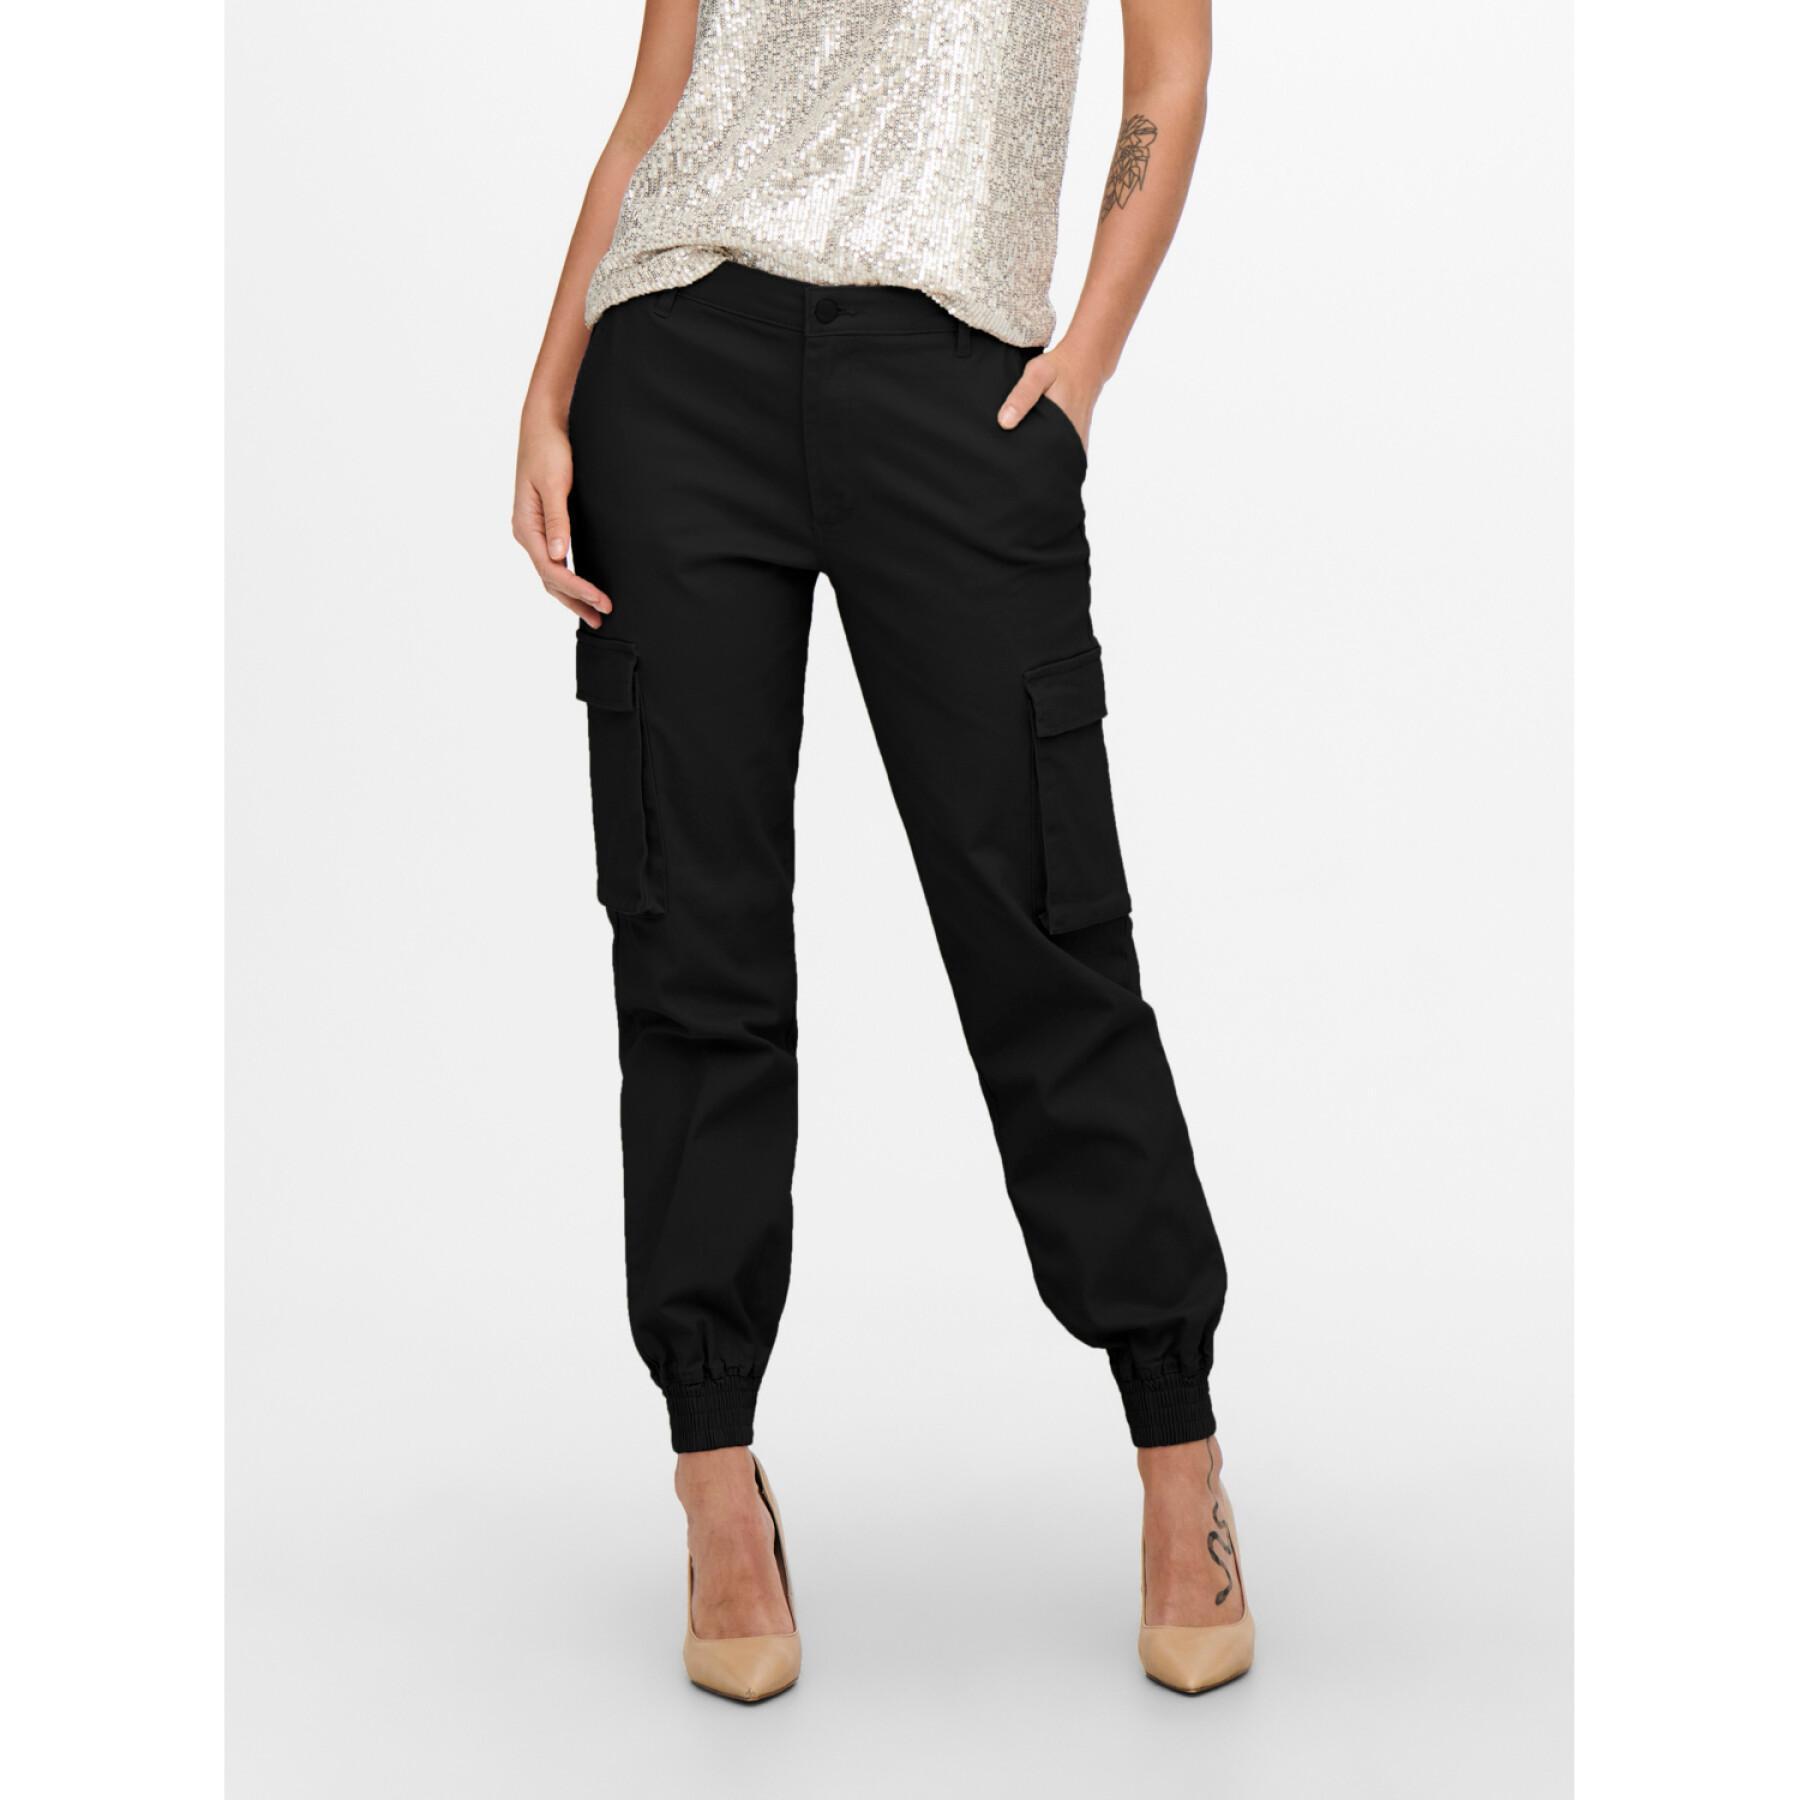 Pantalon cargo femme Only onlb-alva - noir - 40x30